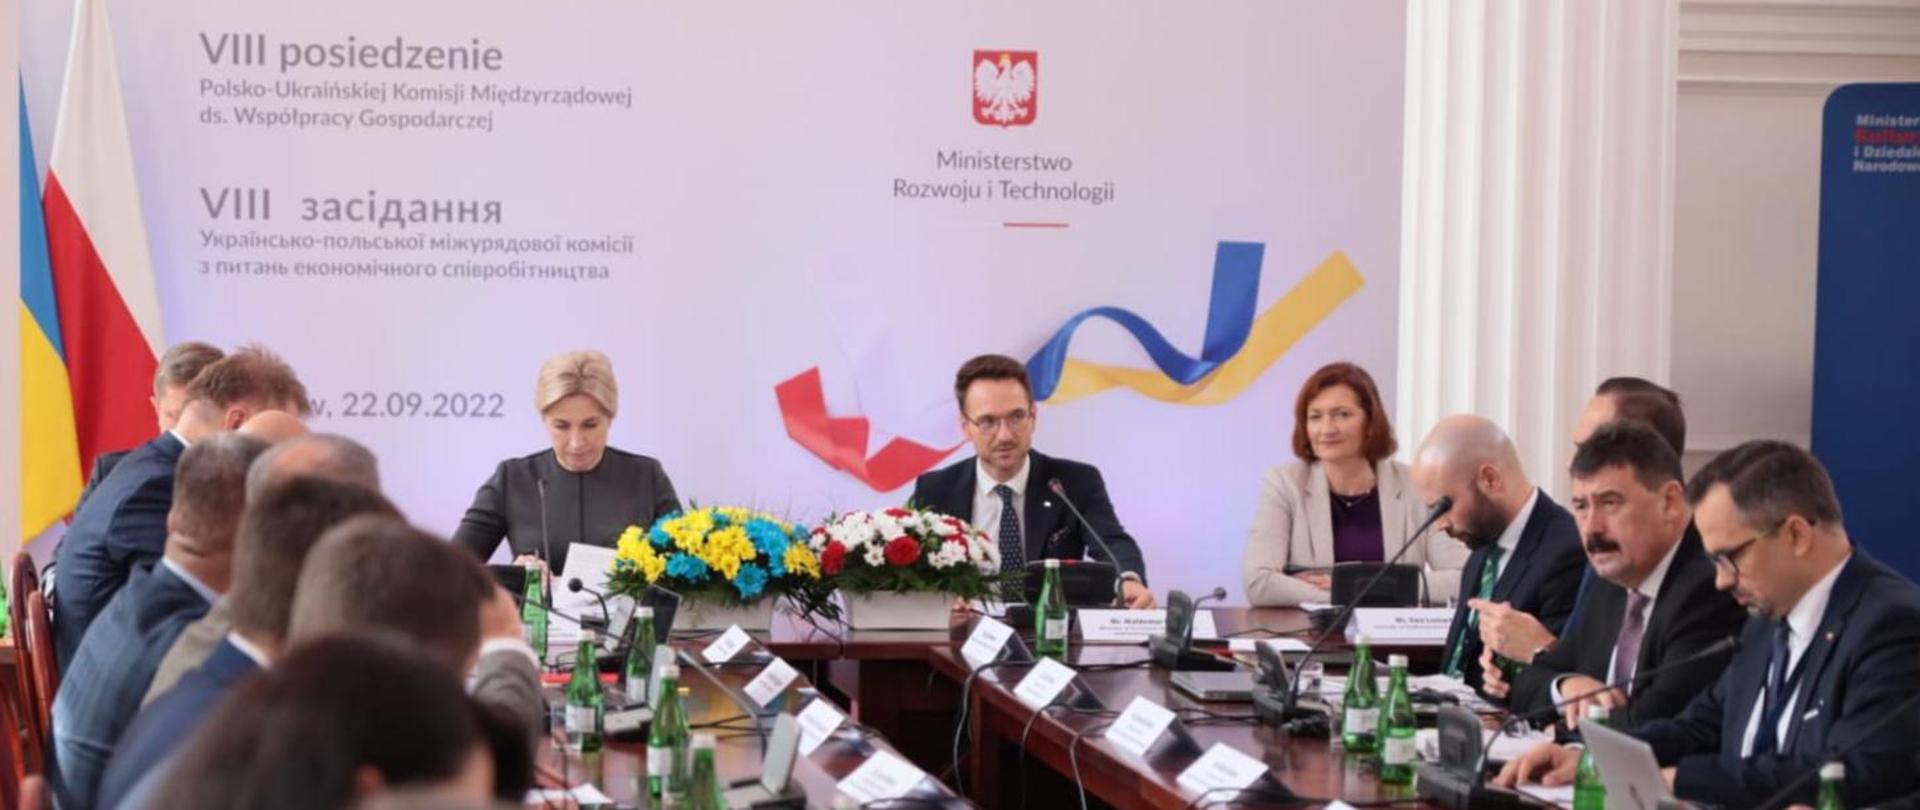 Współpraca gospodarcza pomiędzy Polską a Ukrainą 